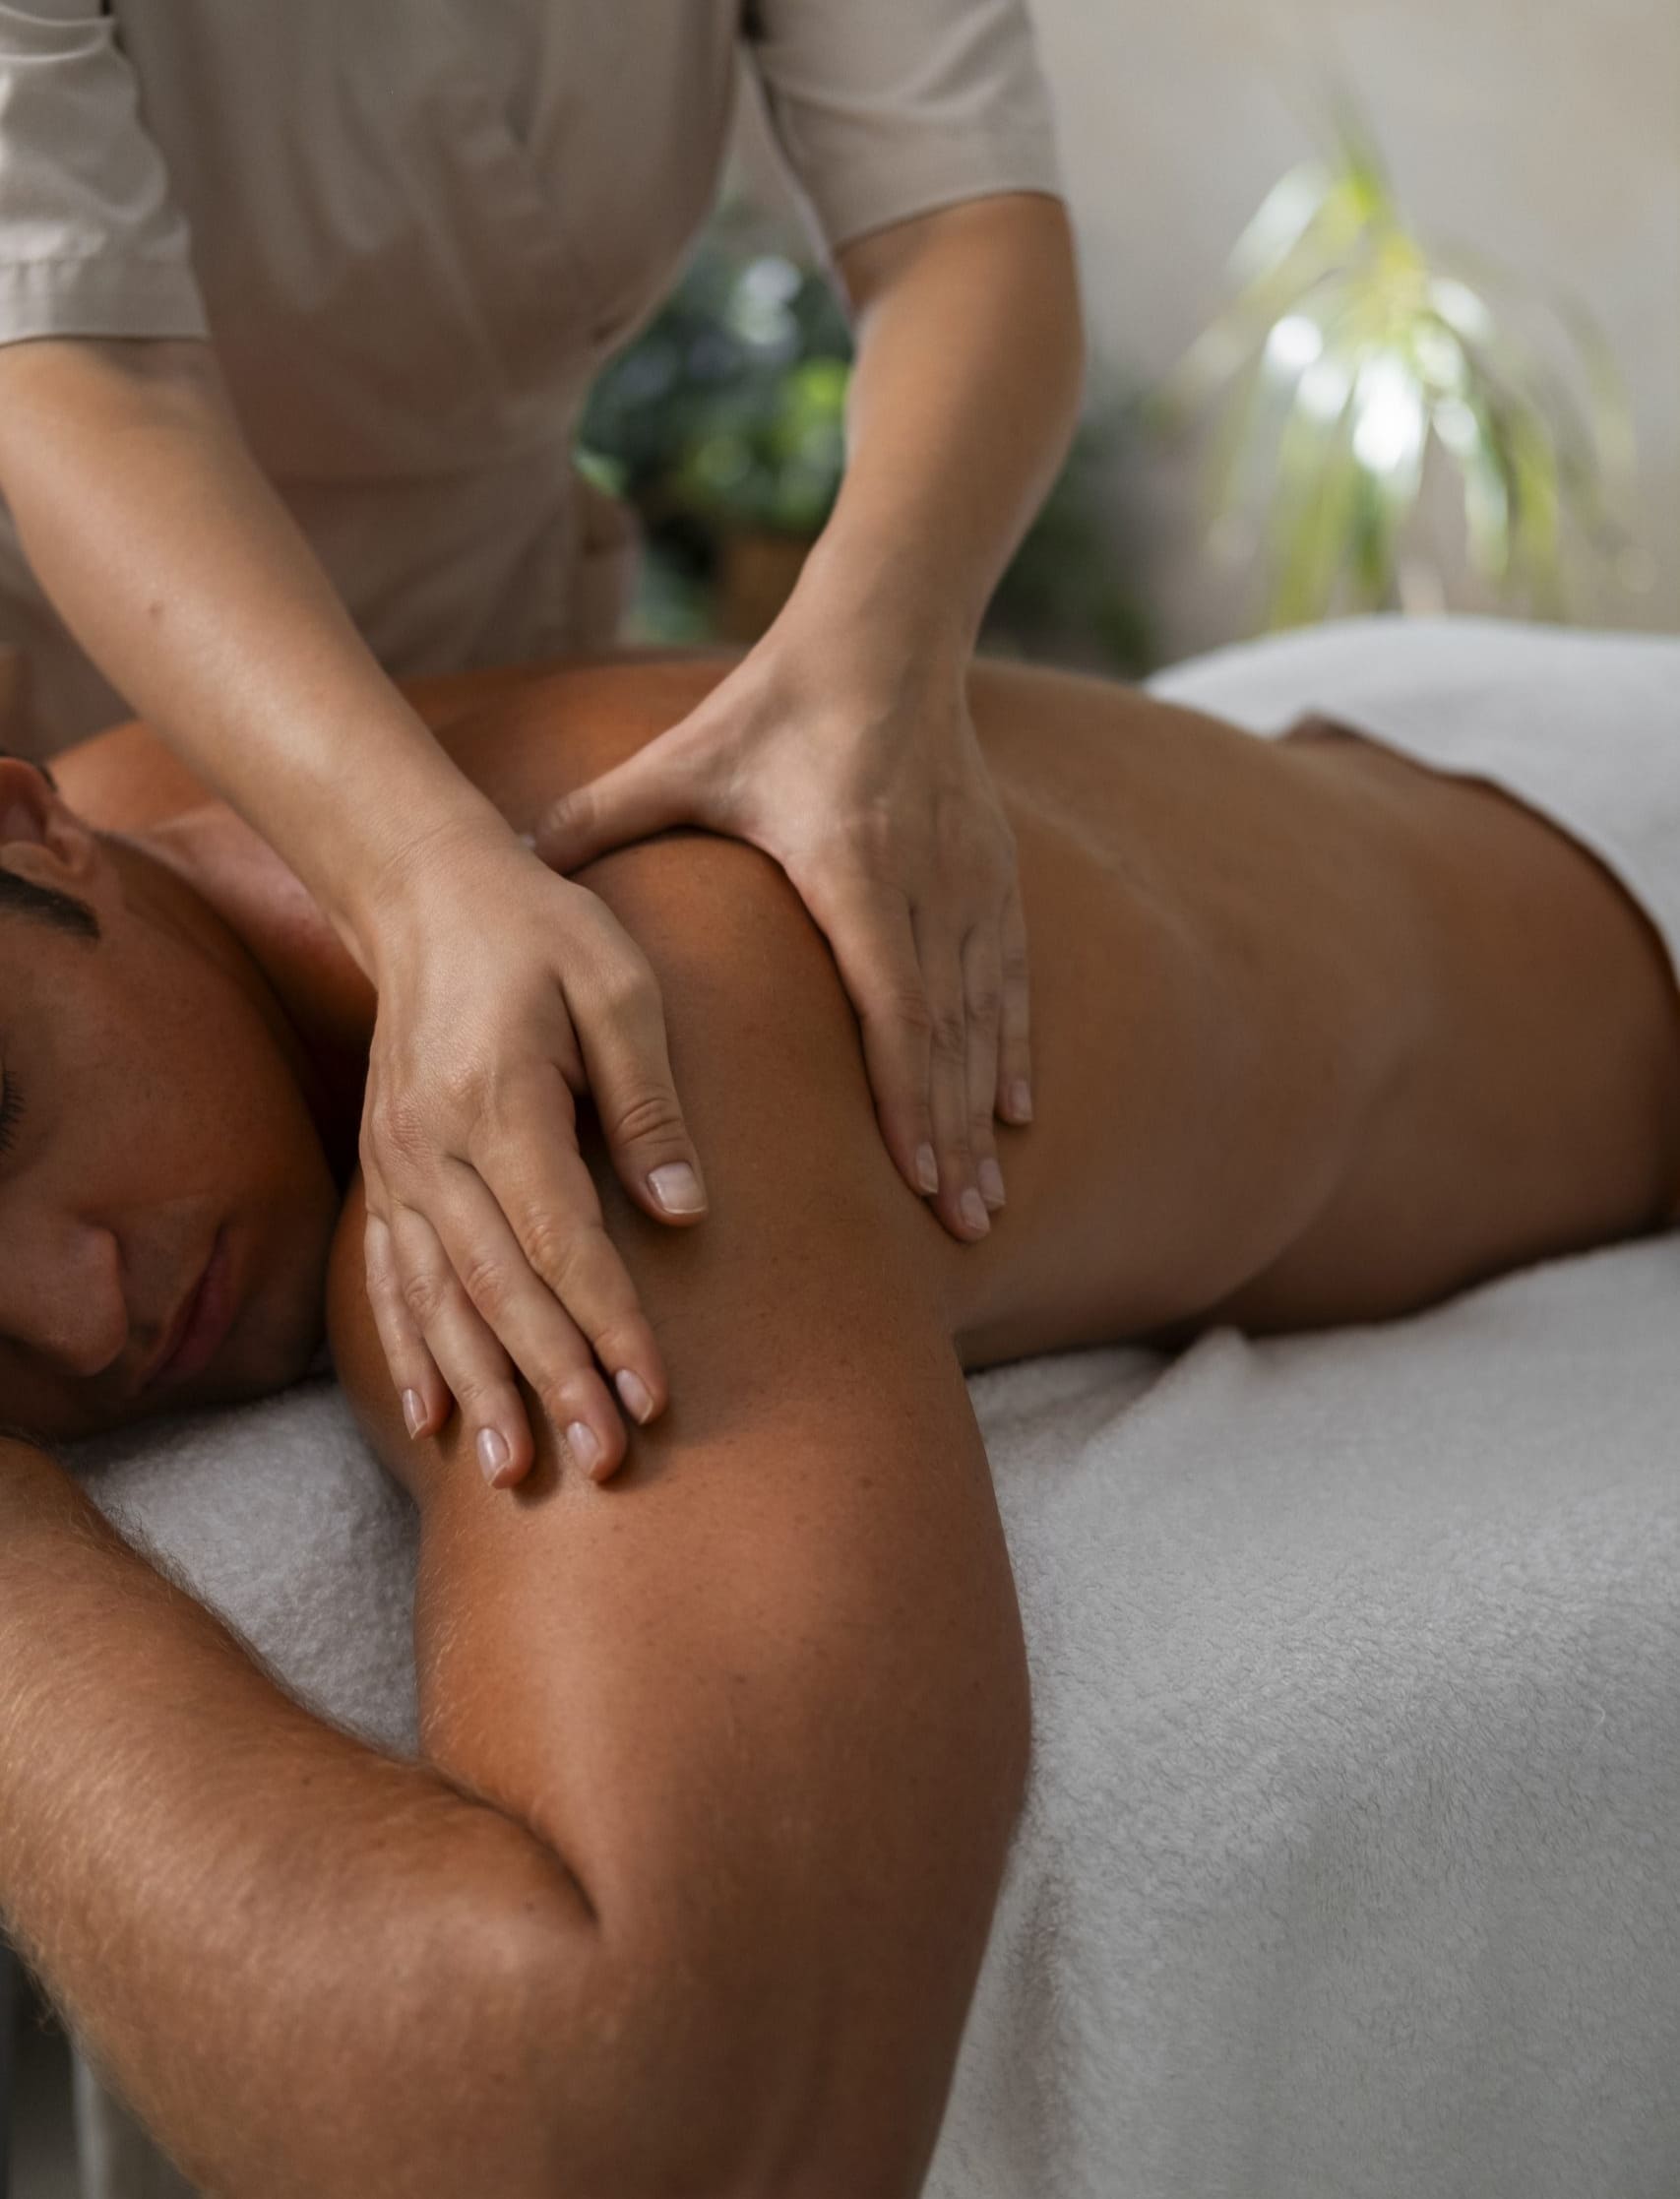 Le massage Tui Na Zheng Gu est une technique traditionnelle chinoise favorisant la circulation énergétique dans le corps, le soulagement des tensions musculaires et des douleurs articulaires